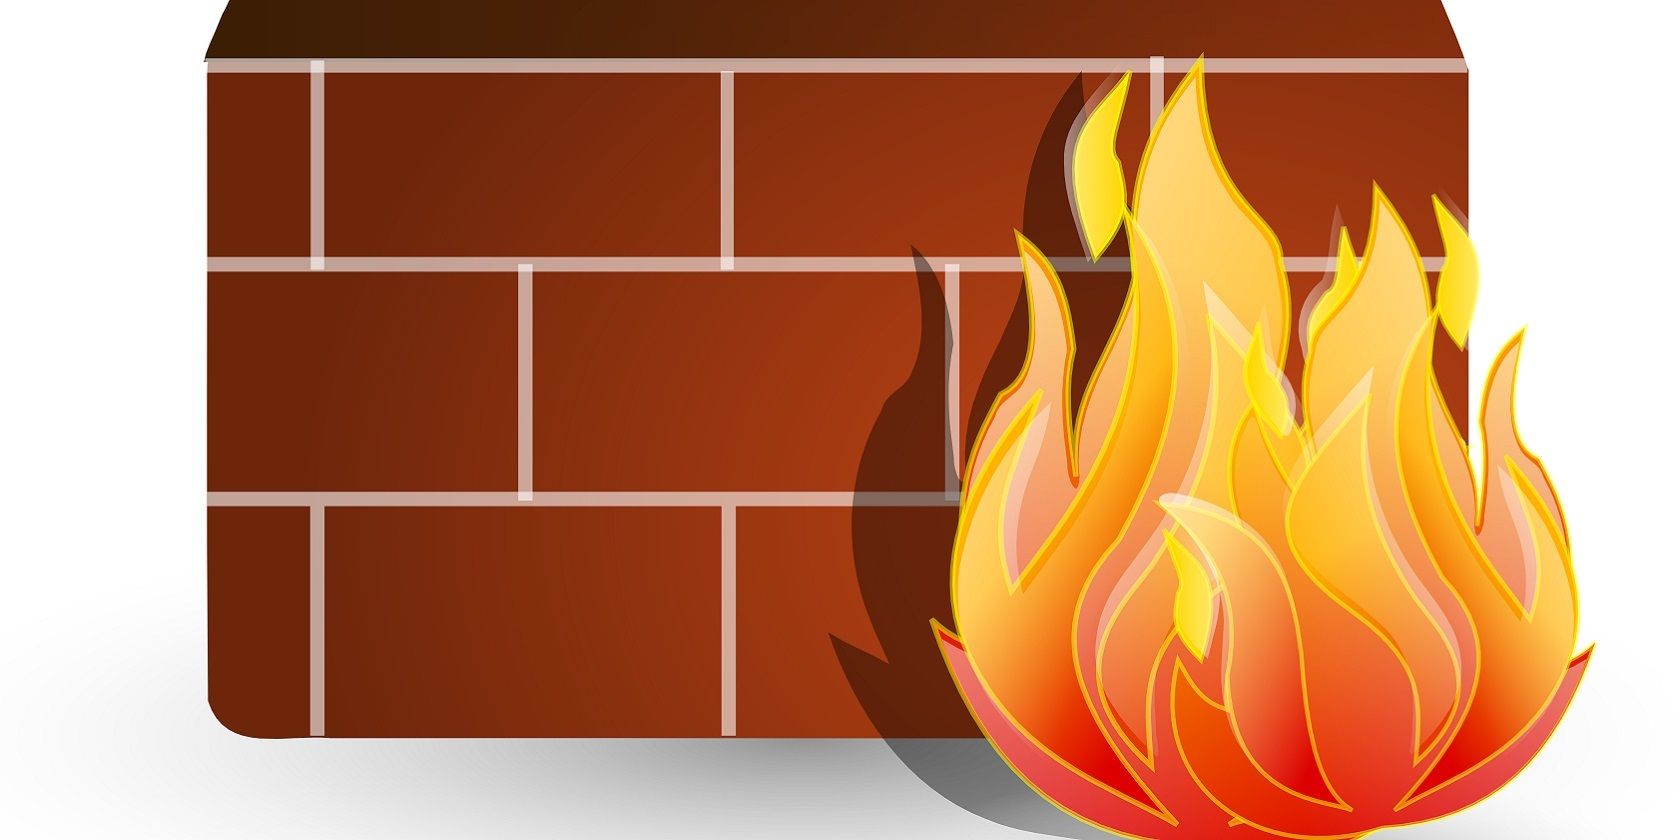 Cartoon fire next to a brick wall